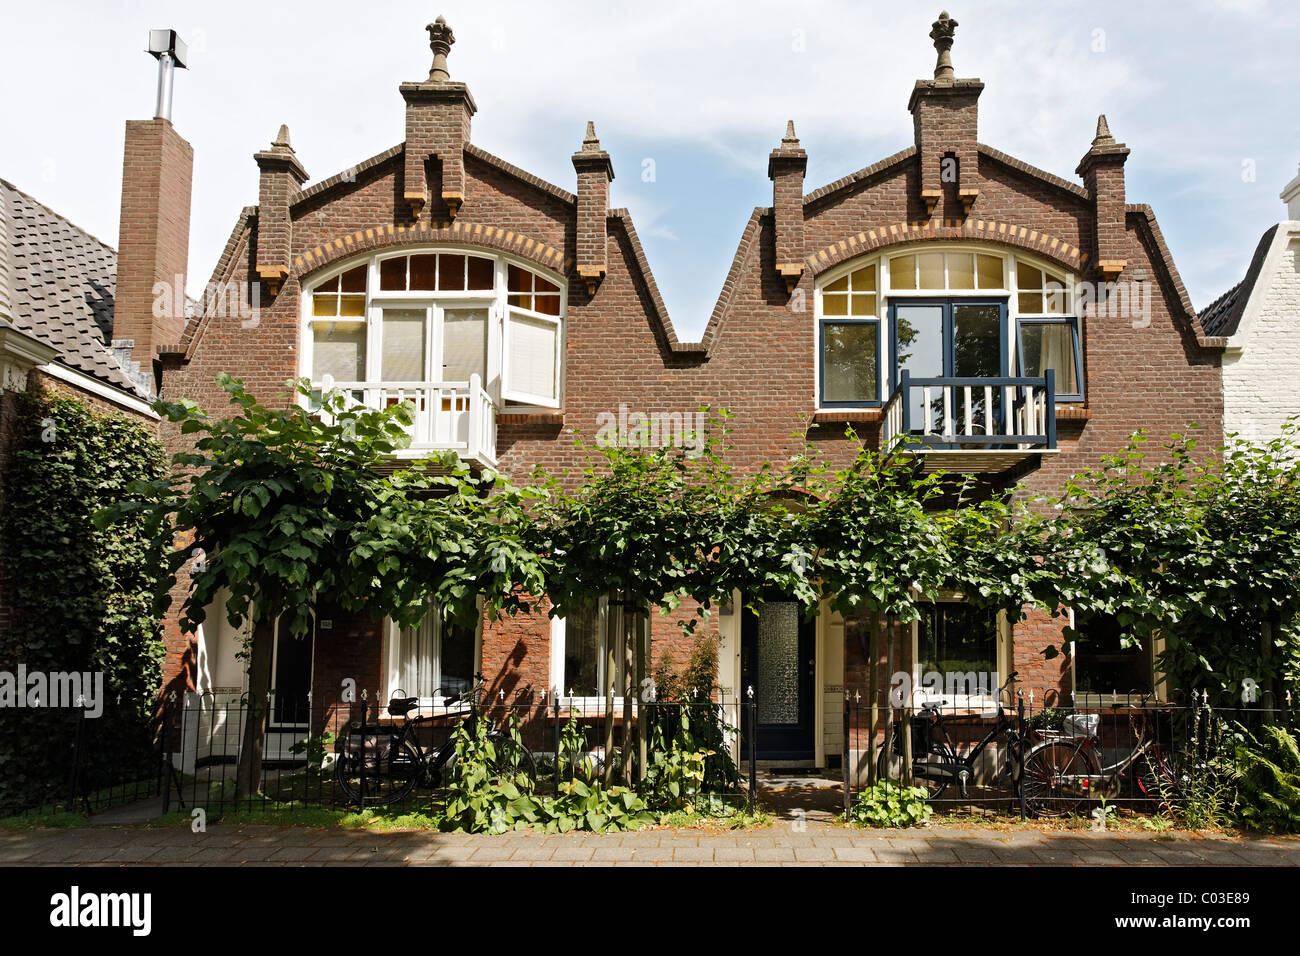 Historischen Stadthäusern mit Giebeln auf Nordsingel Straße, Middelburg, Halbinsel Walcheren, der Provinz Zeeland, Niederlande, Benelux Stockfoto